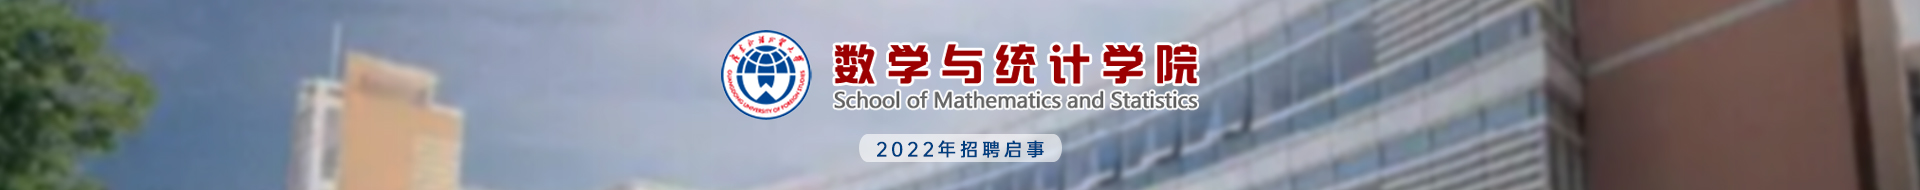 廣東外語外貿大學數學與統計學院